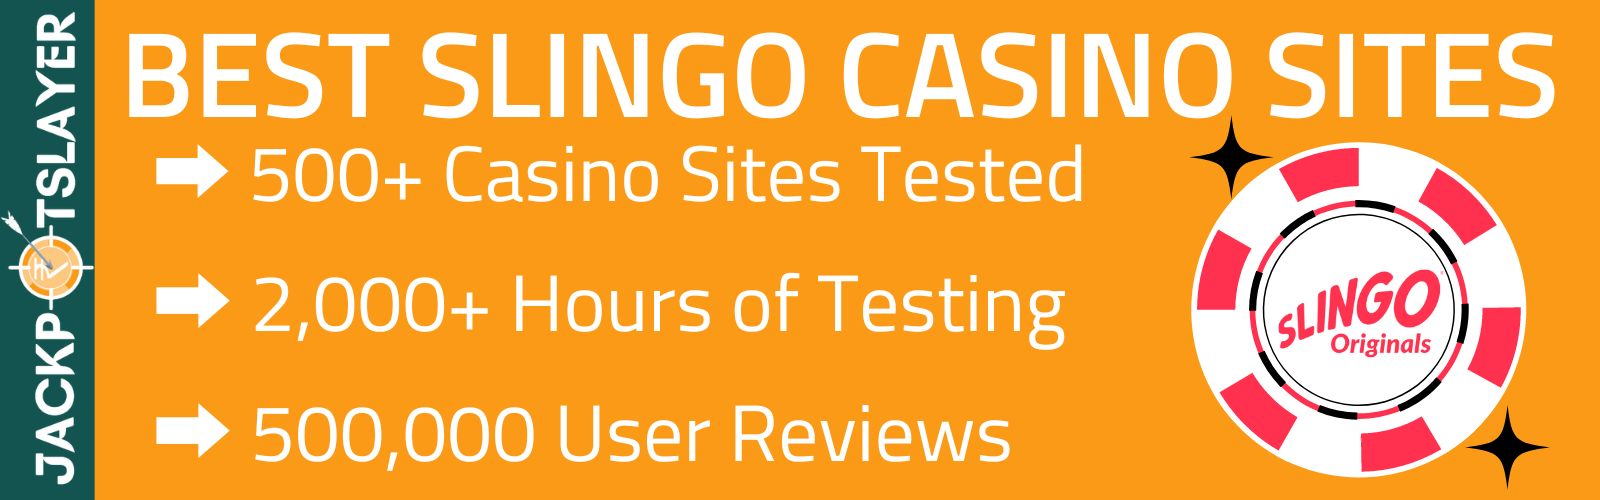 Best Slingo Casino Sites